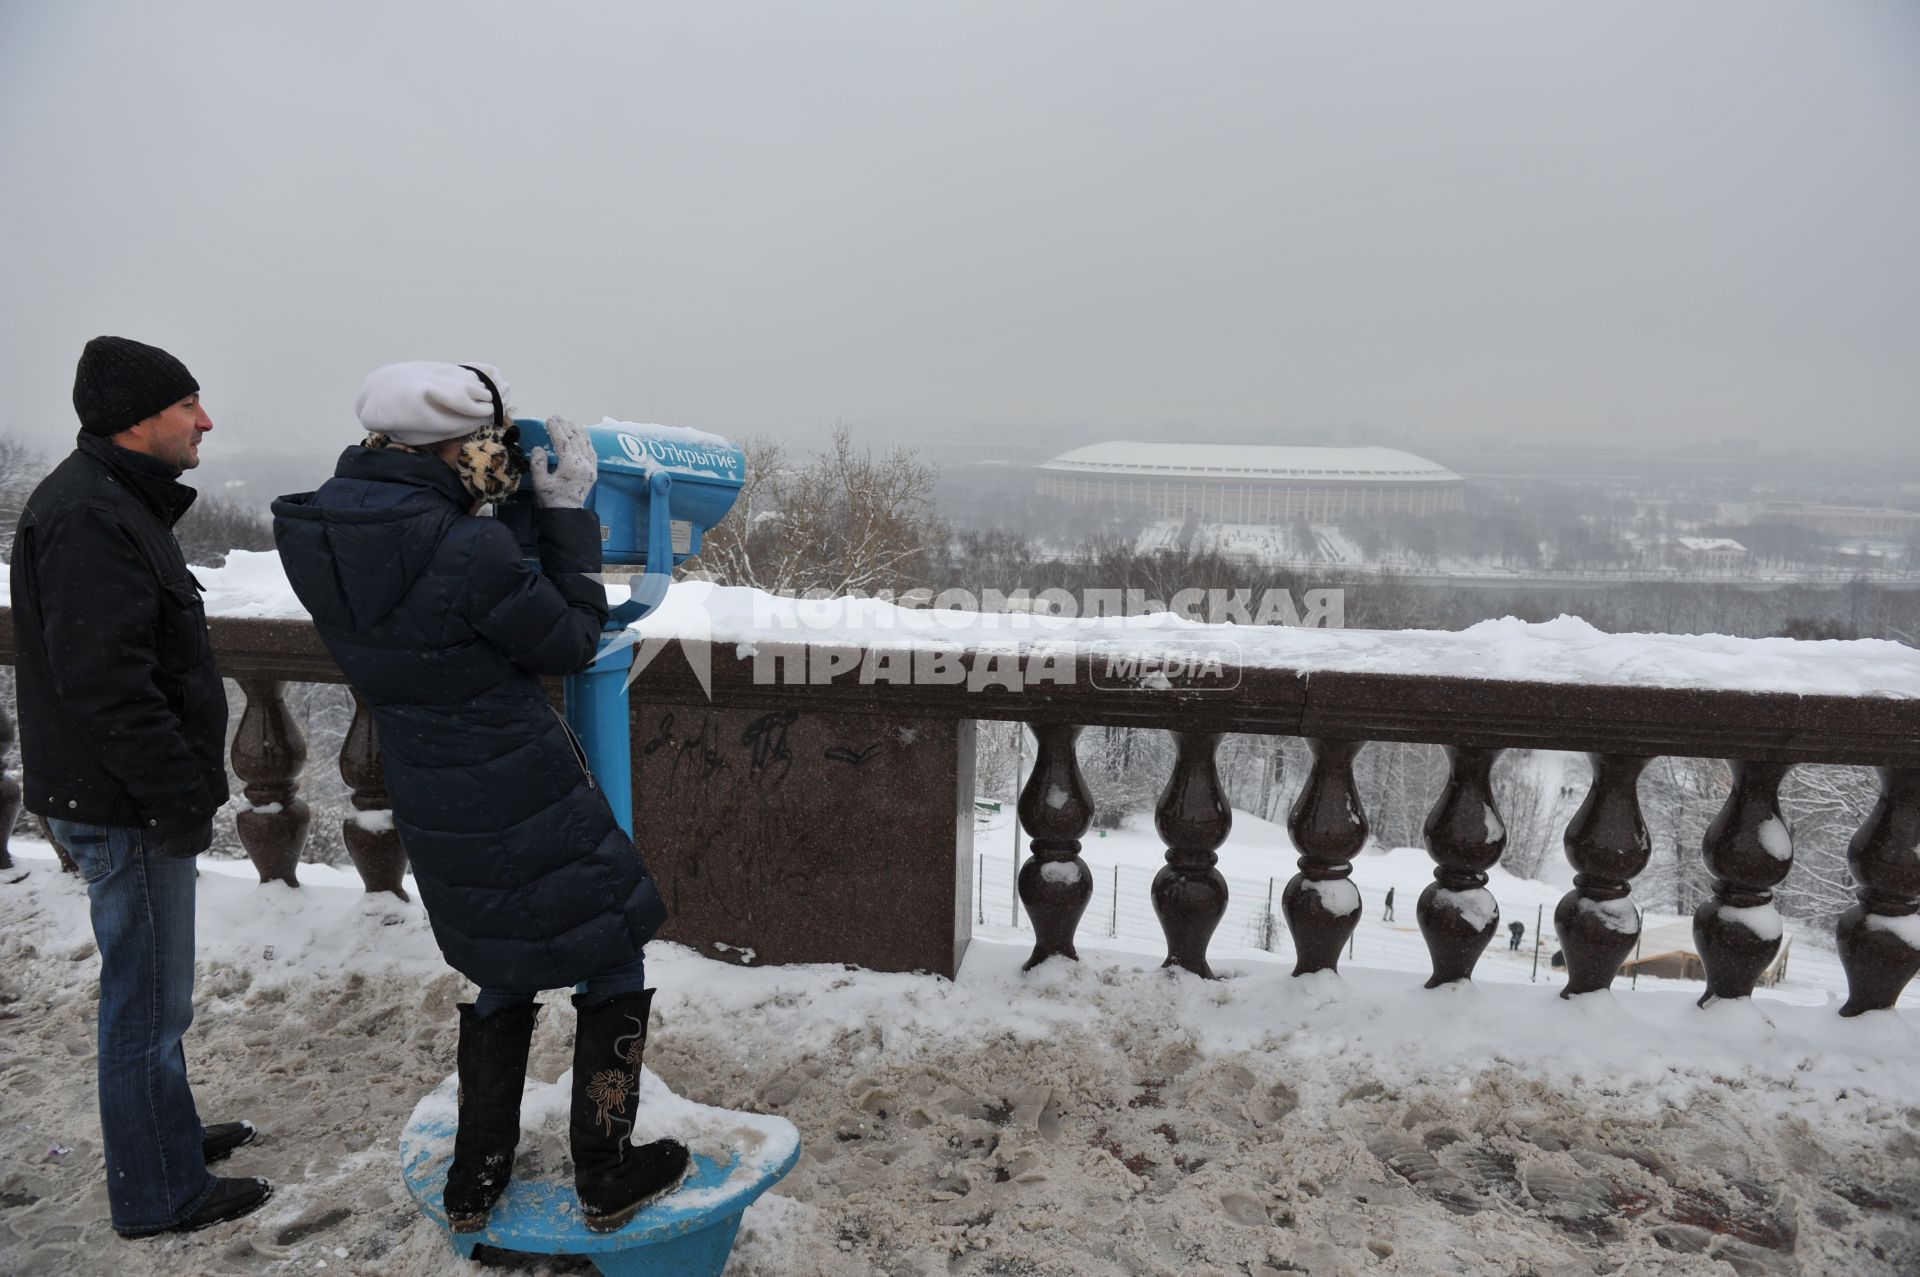 Смотровая площадка на Воробьевых горах. На снимке: девочка смотрит в обзорный бинокль.